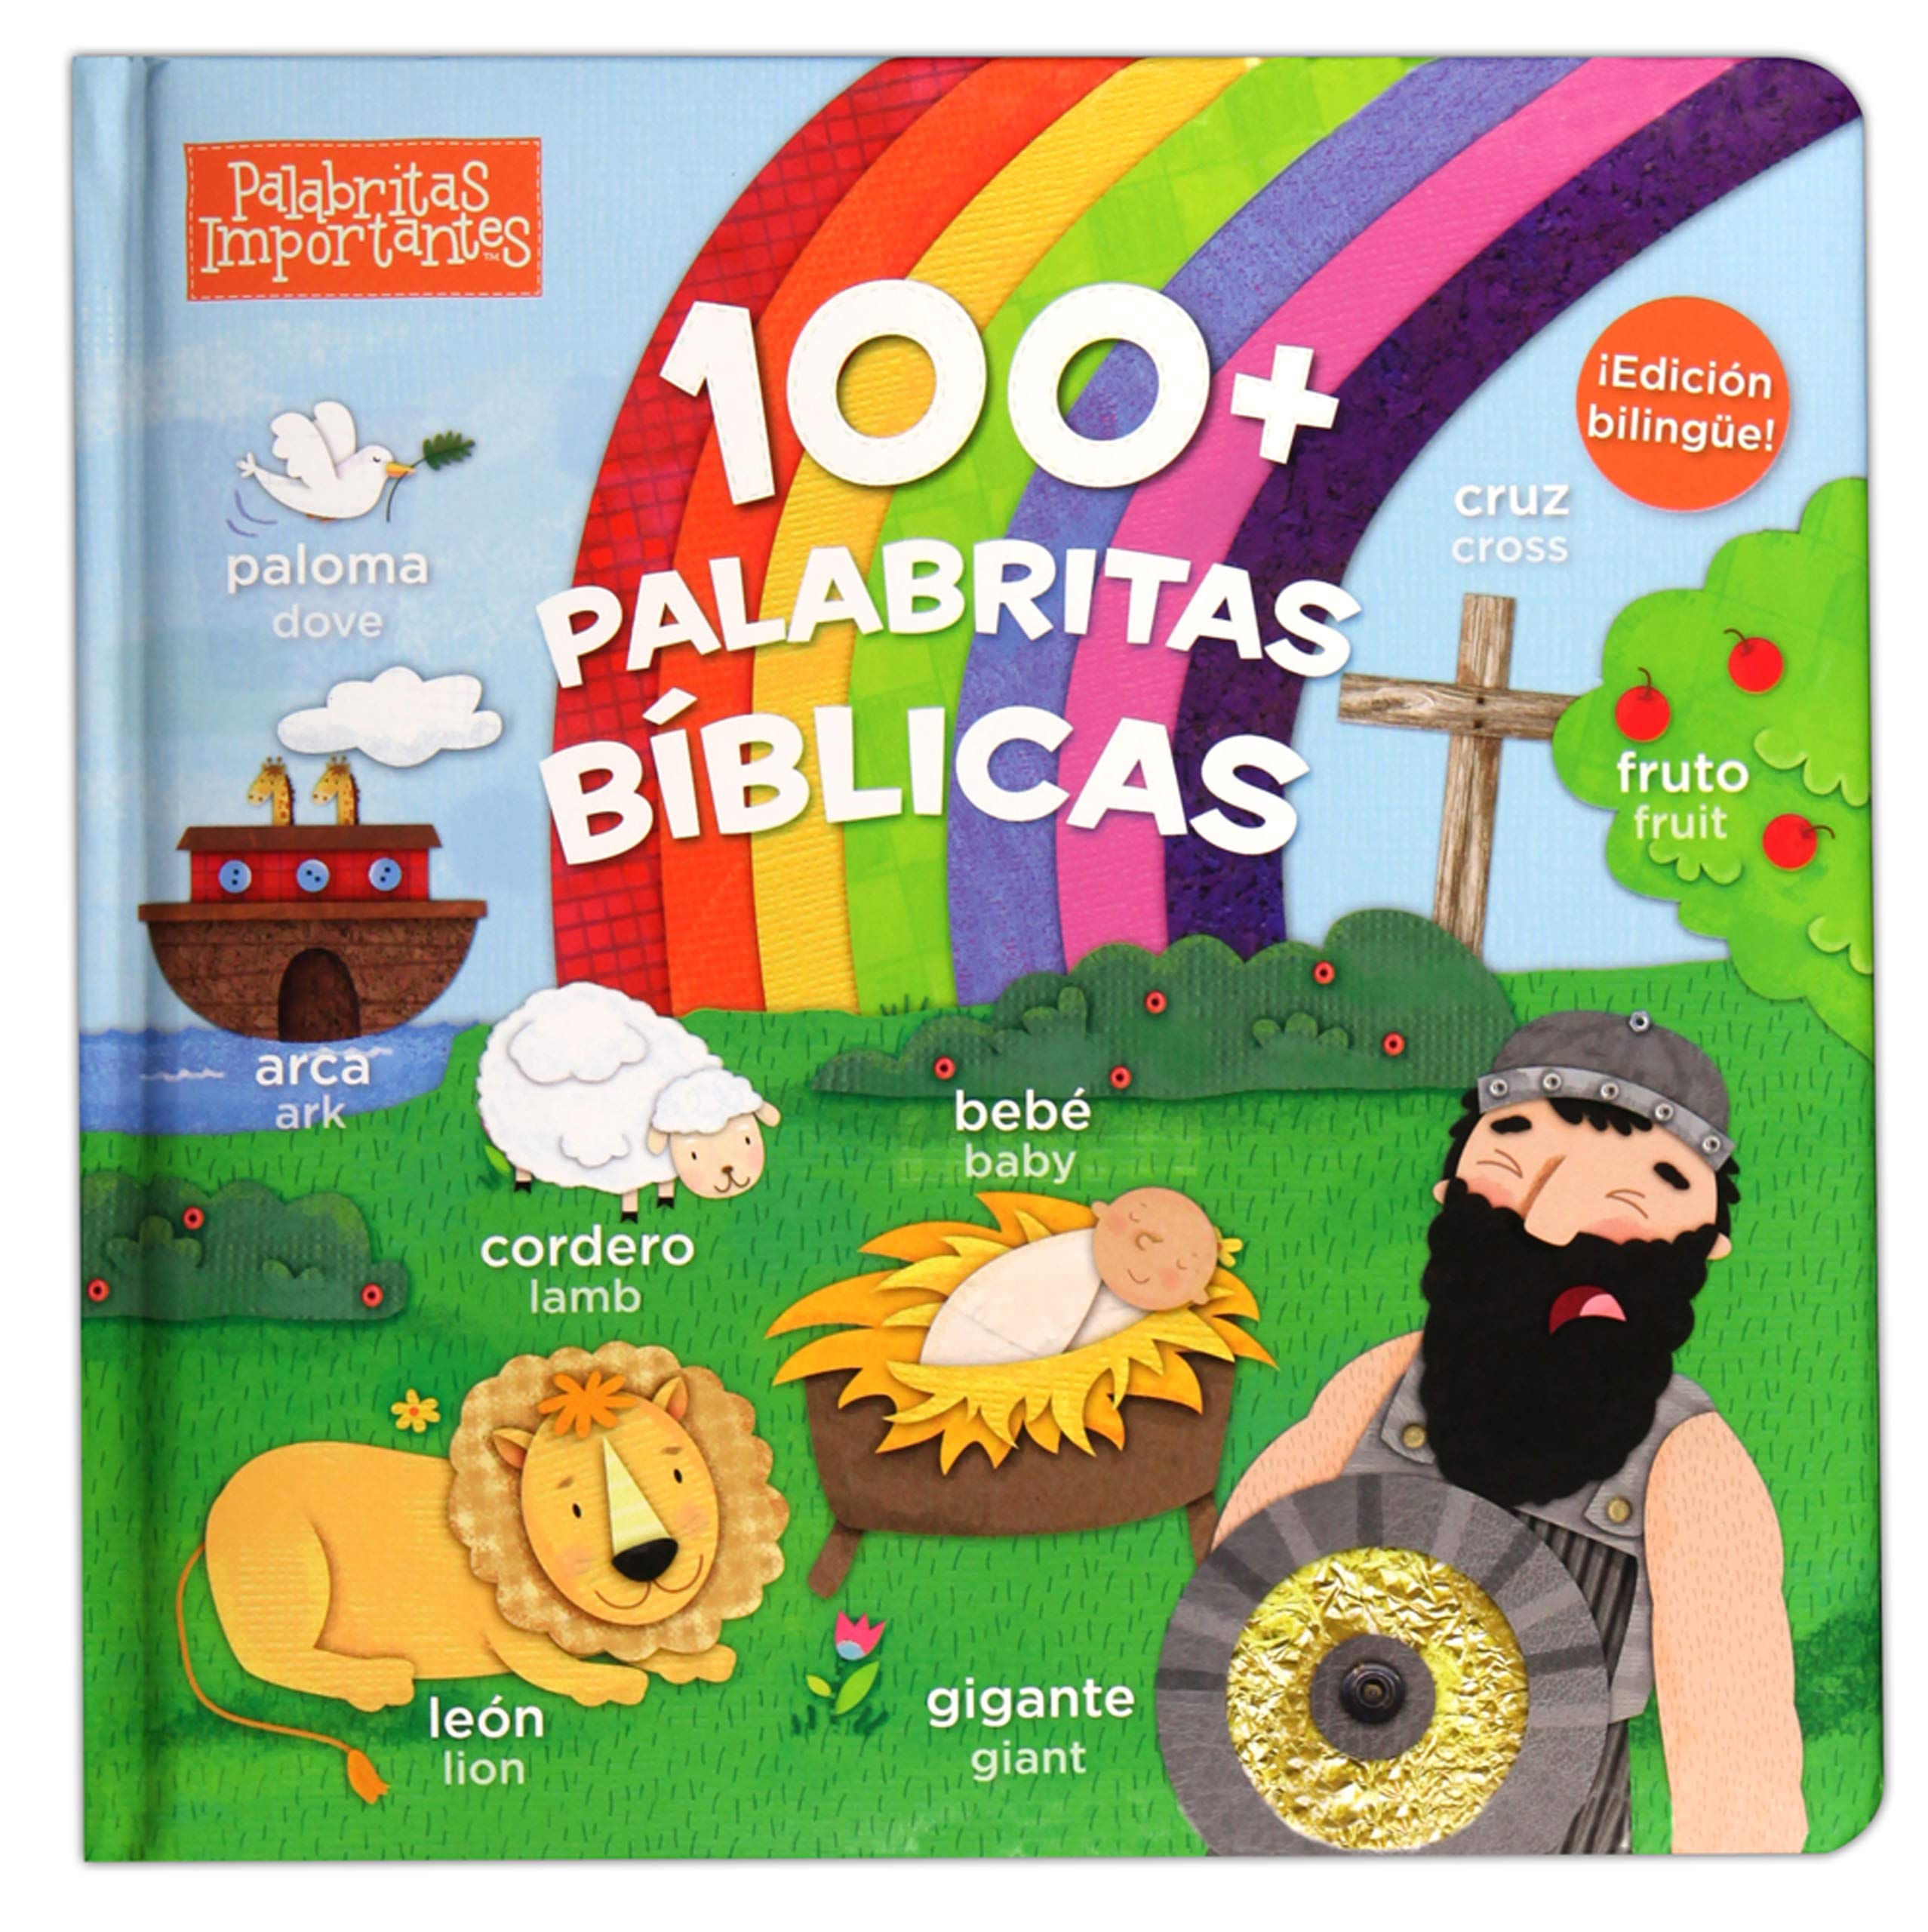 100 palabritas bíblicas edición bilingüe - Librería Libros Cristianos - Libro